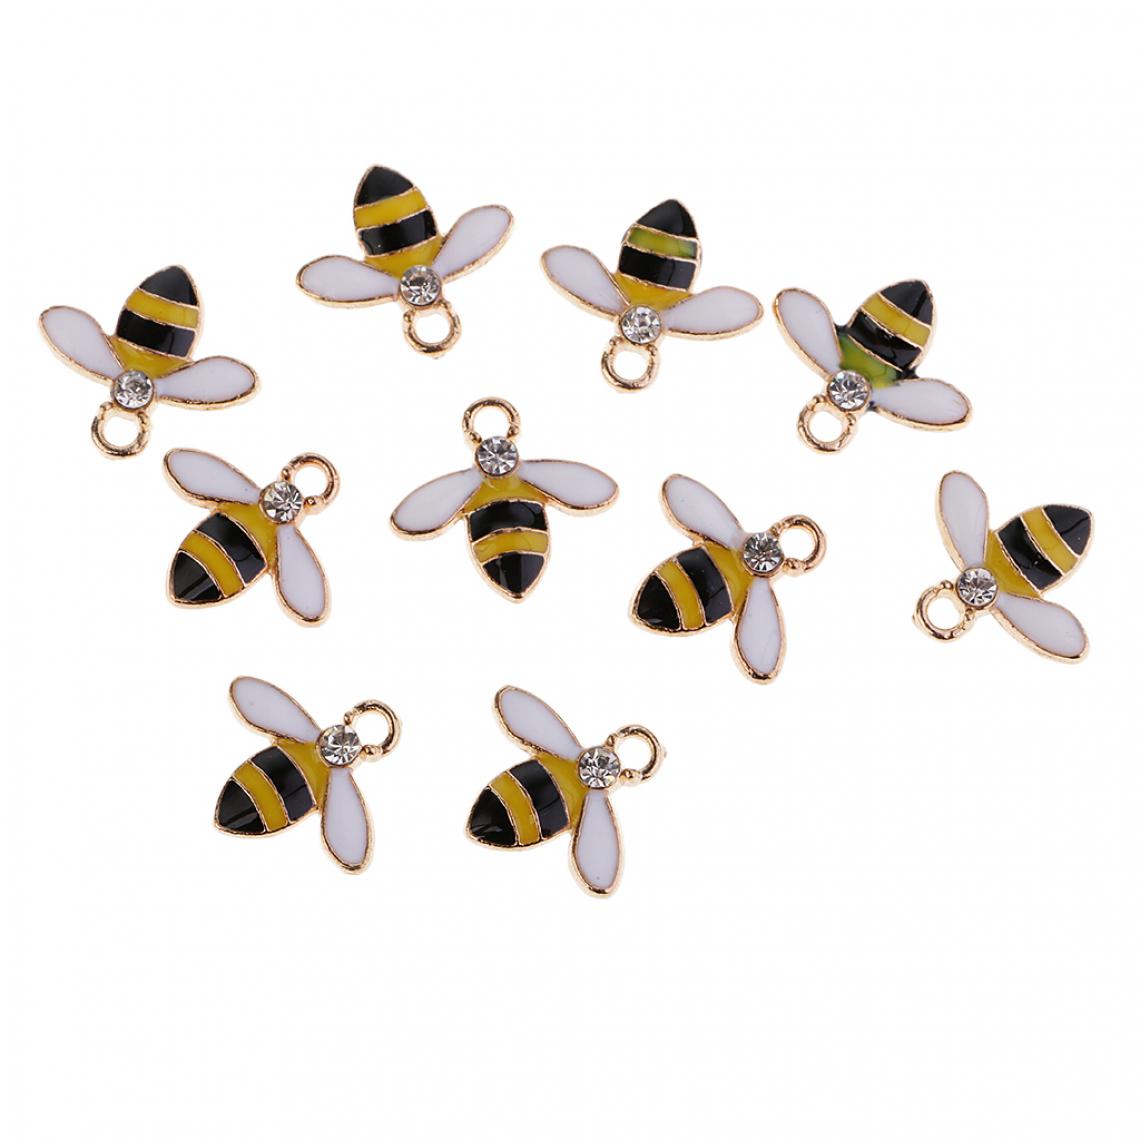 marque generique - 10 pièces abeille alliage strass flatback embellissements décoratifs jaune - Poignée de meuble